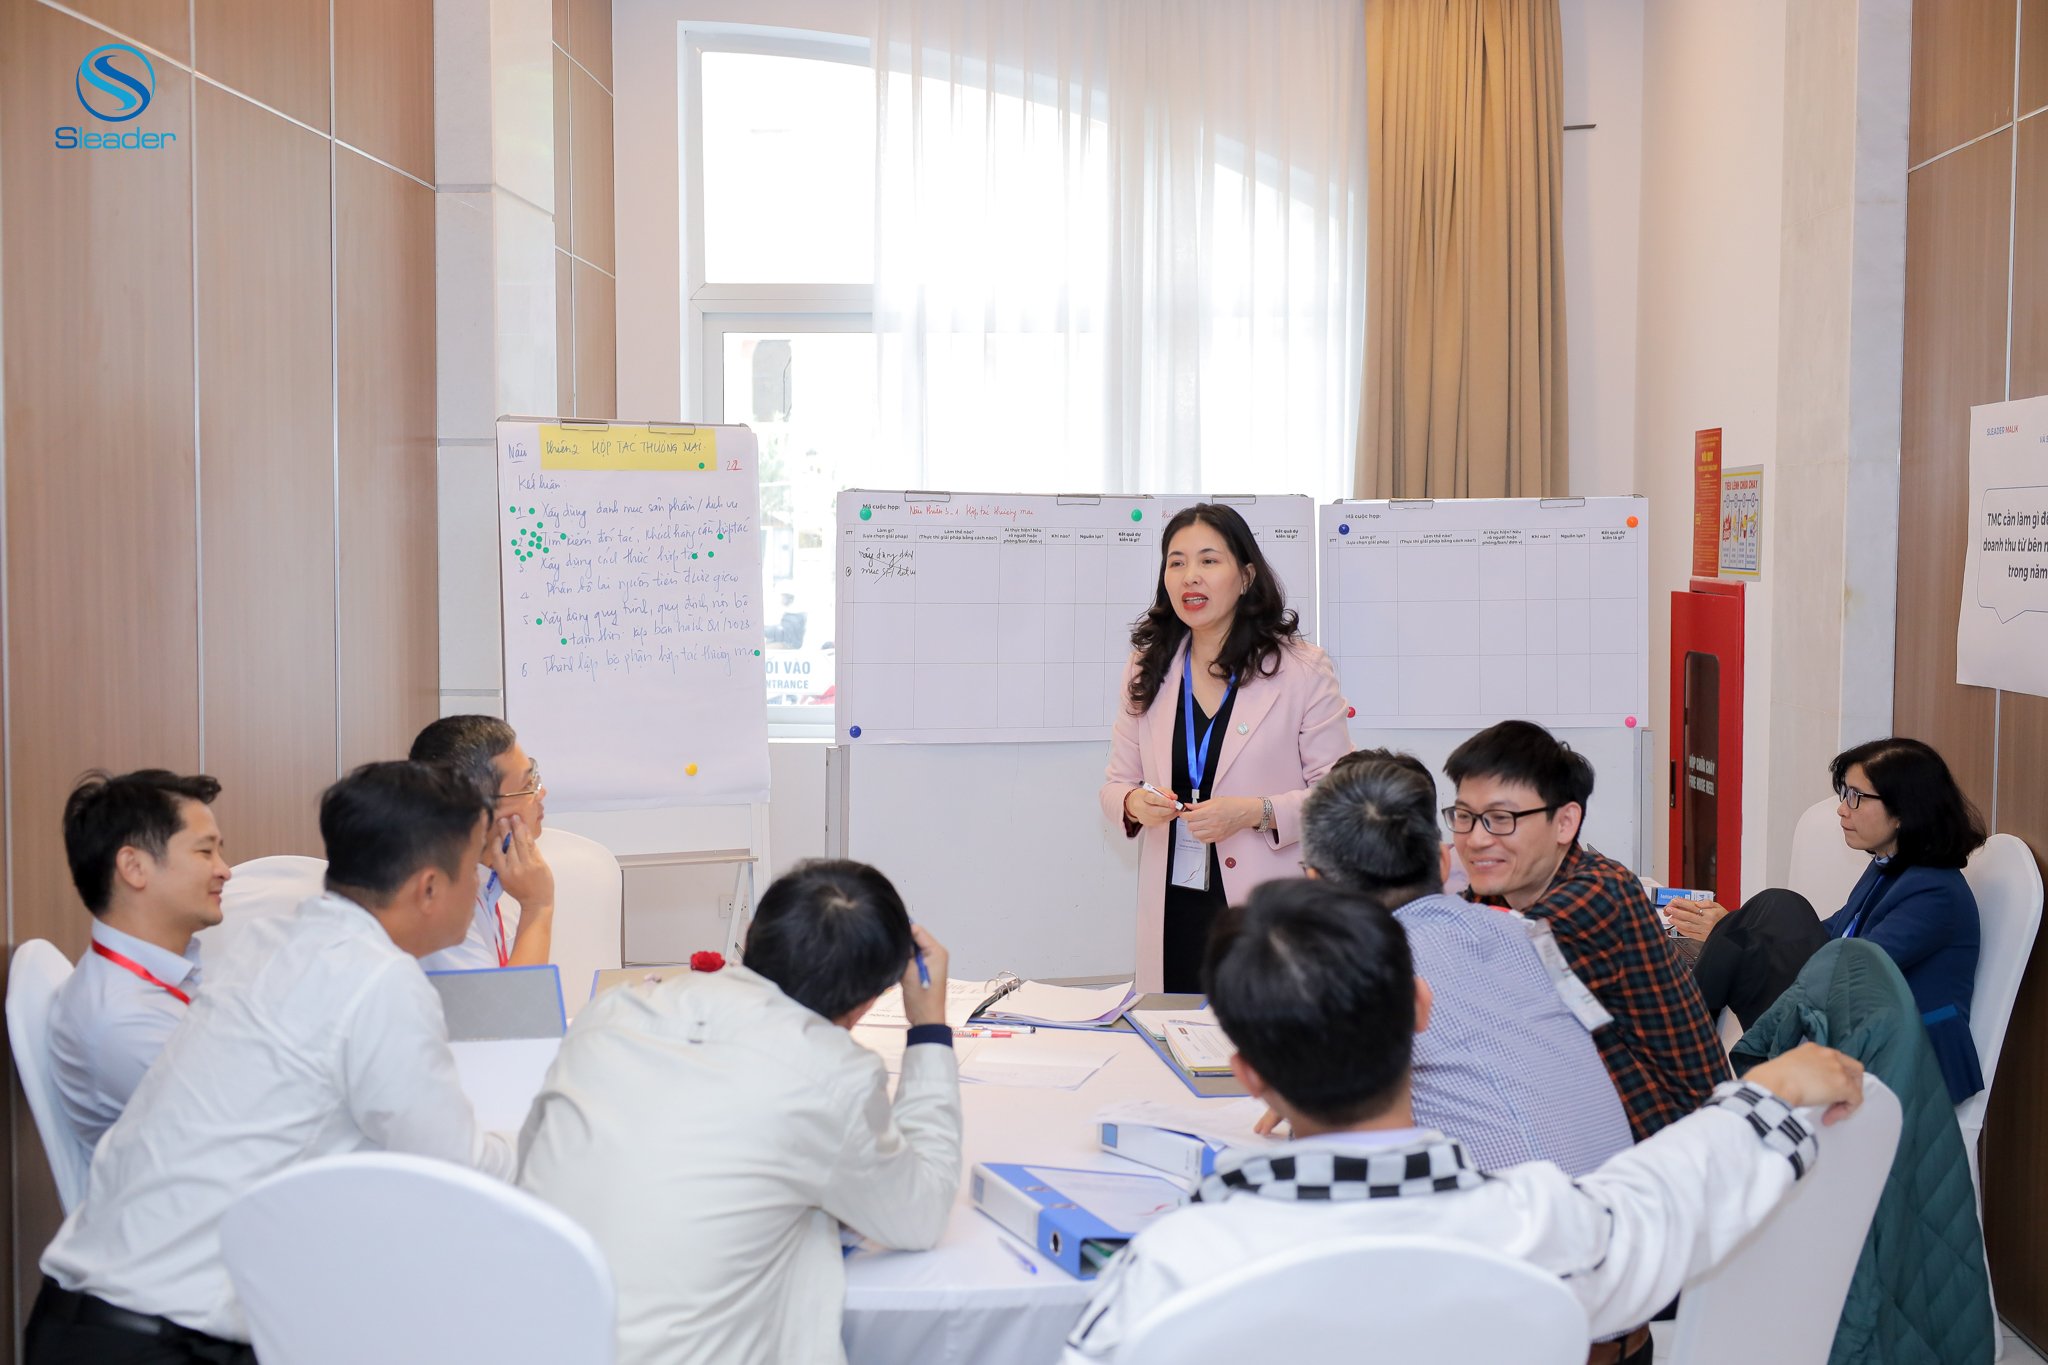 TS. Dương Thu , Viện trưởng Viện Nghiên cứu Phát triển Lãnh đạo Chiến lược (Sleader), đang hướng dẫn phiên thảo luận nhóm